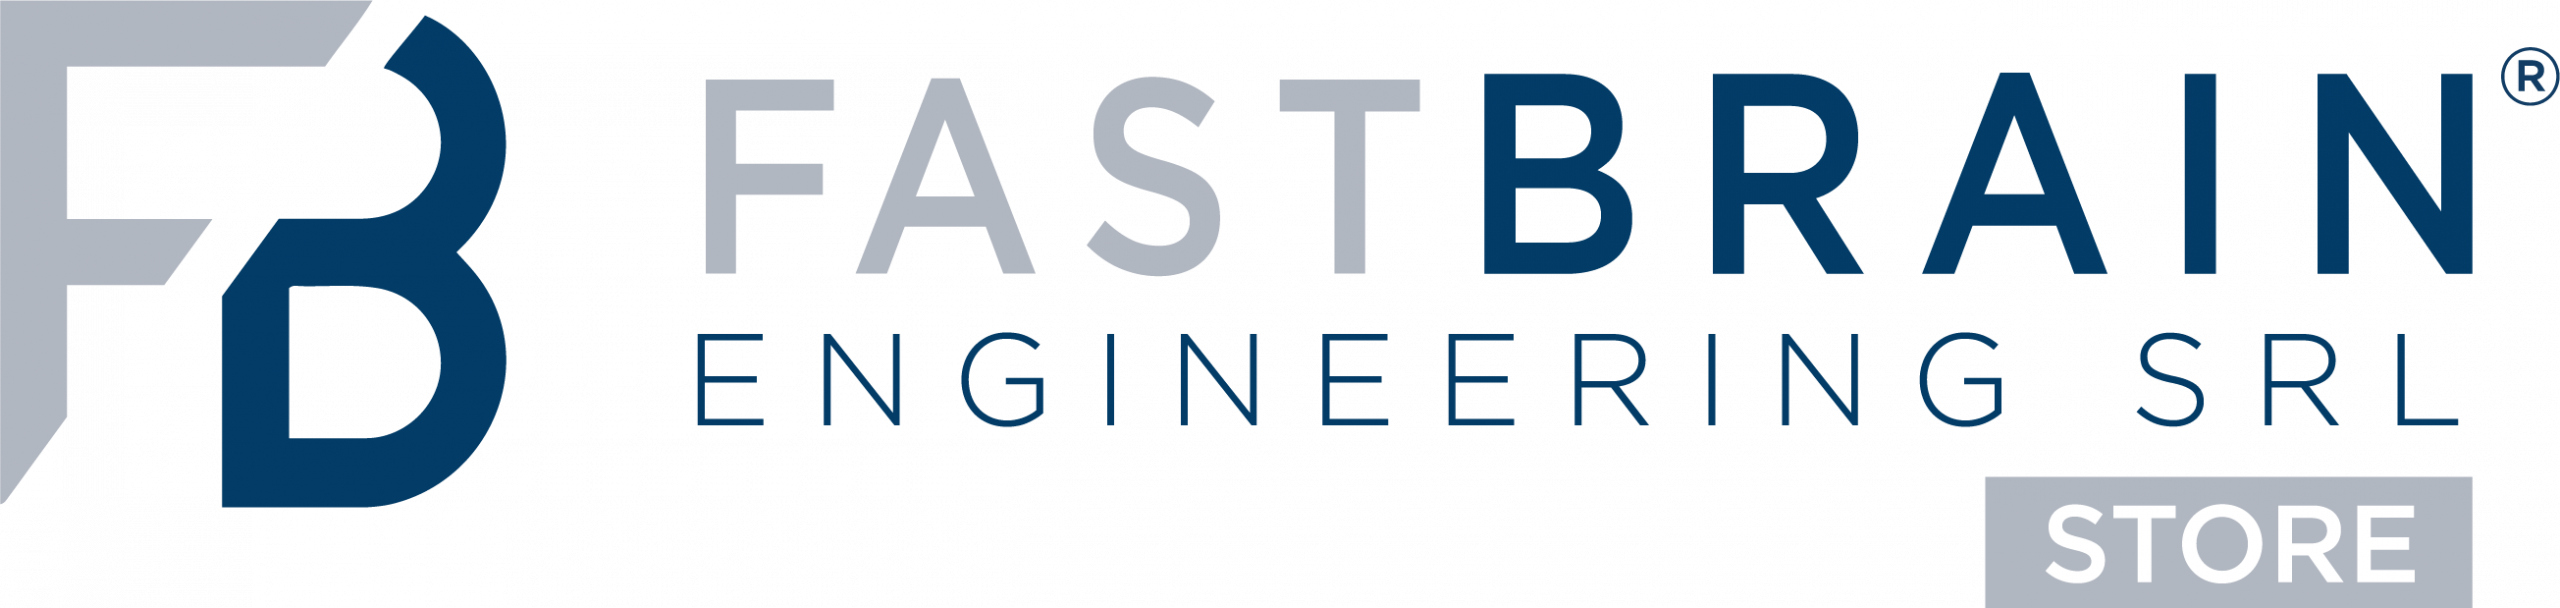 Store B2C Fastbrain Engineering Srl